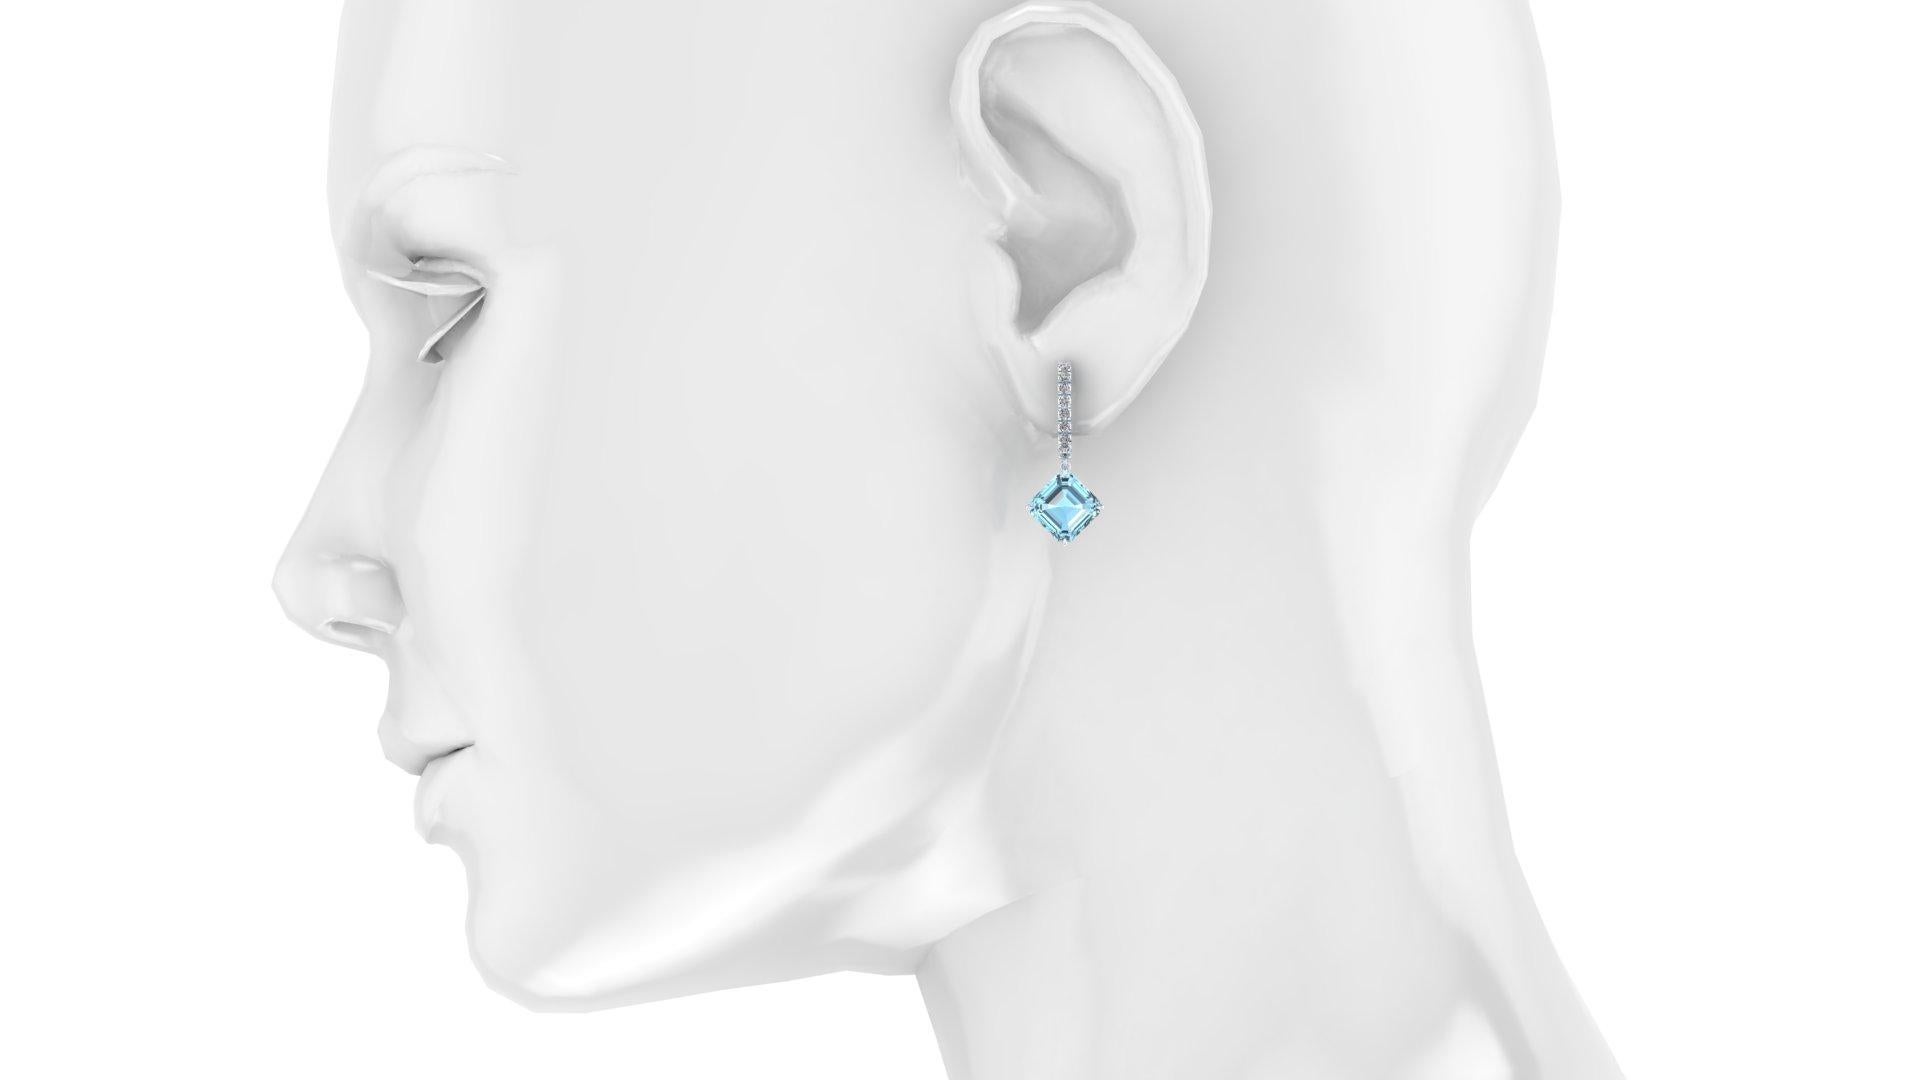 4.62 Carats Aigue-marine et Diamants Boucles d'oreilles en Platine, diamants taillés en brillant pour un poids total approximatif de 0.28ct de couleur G/H, pureté VS, sertis dans du Platine 950 boucles d'oreilles pendantes.
Autobloquant en poussant